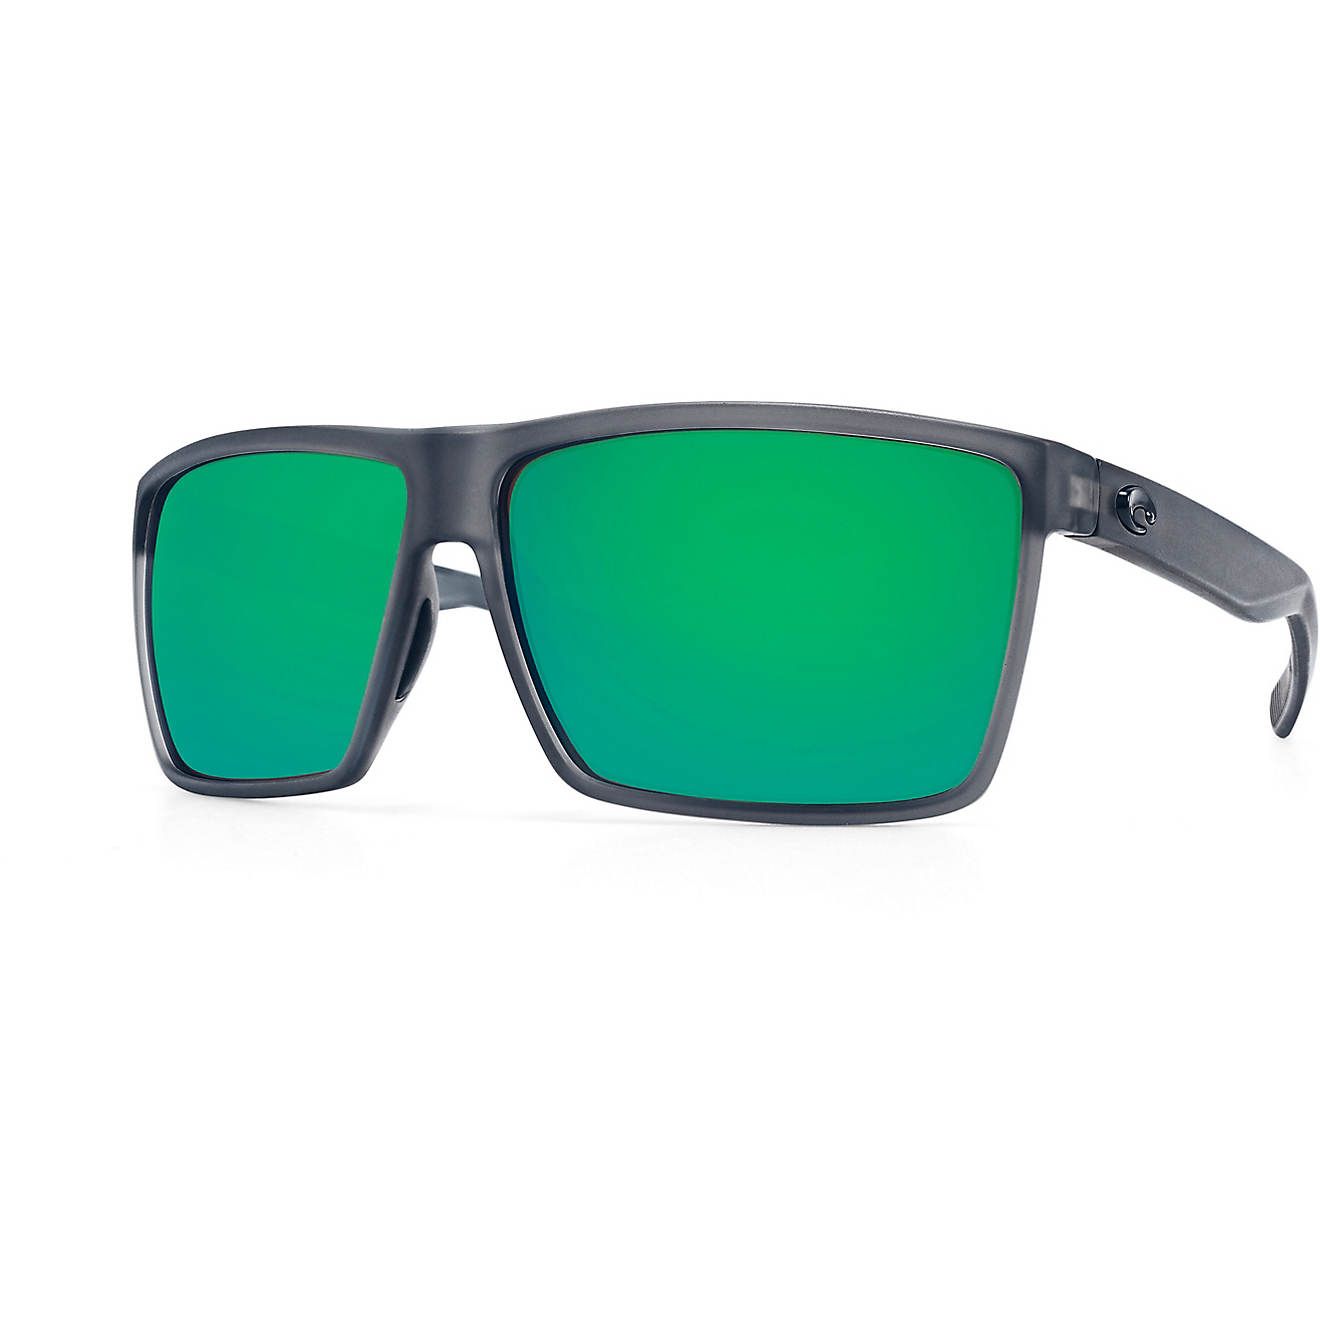 Costa Del Mar Rincon Mirrored Sunglasses | Academy Sports + Outdoor Affiliate